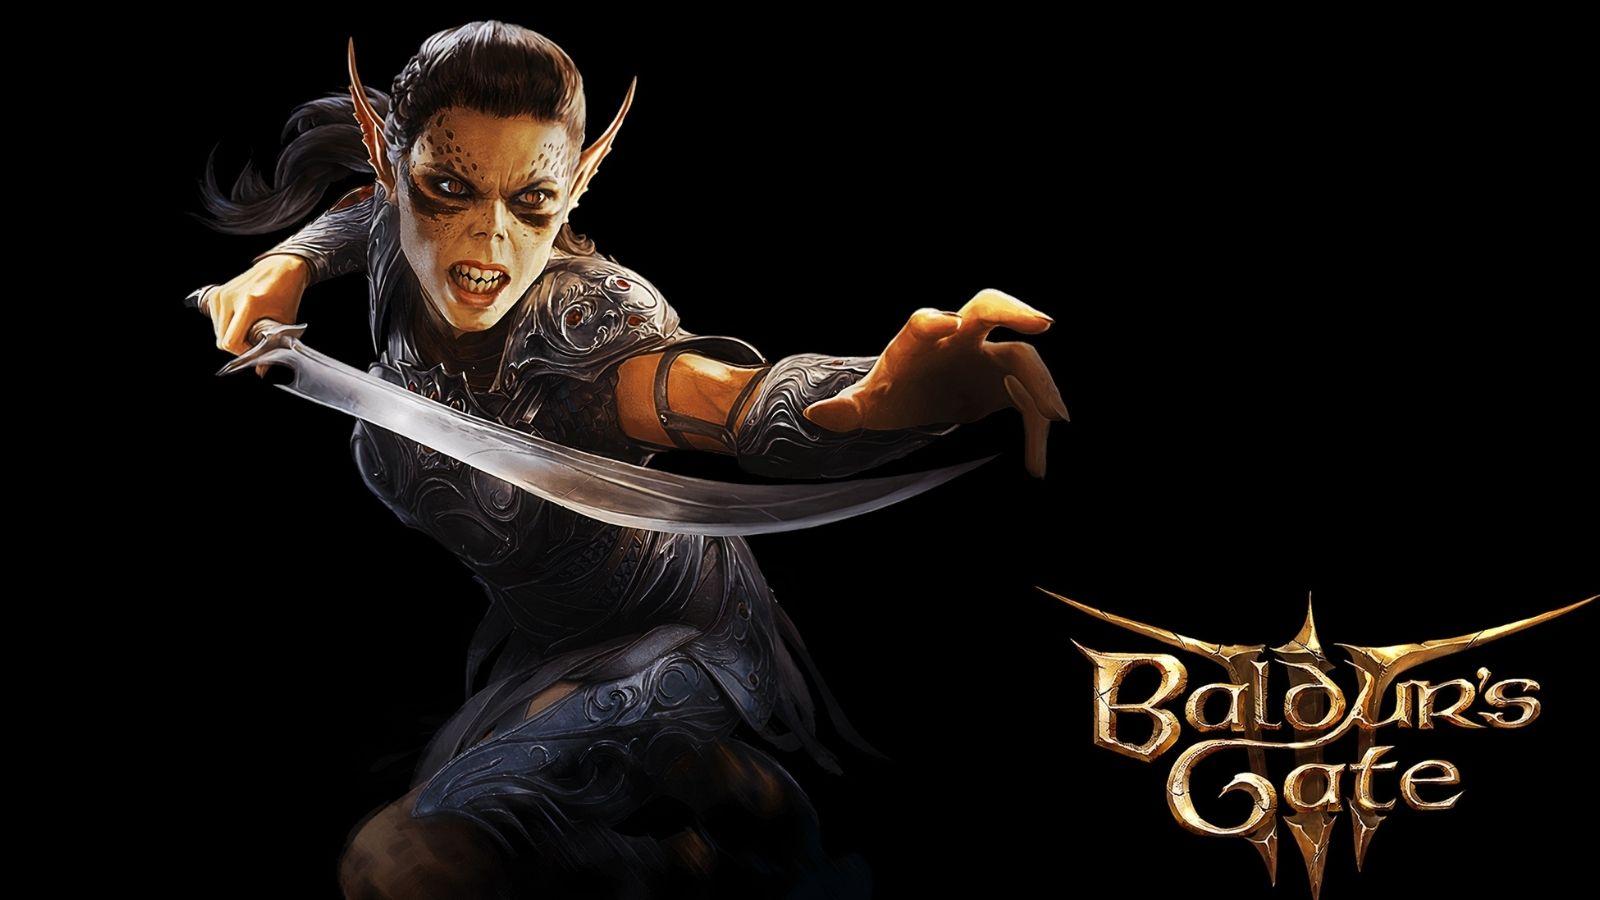 Baldur's Gate 3 oyununun fiziksel versiyonunun Xbox Series X için dört disk olarak geleceği açıklandı. 